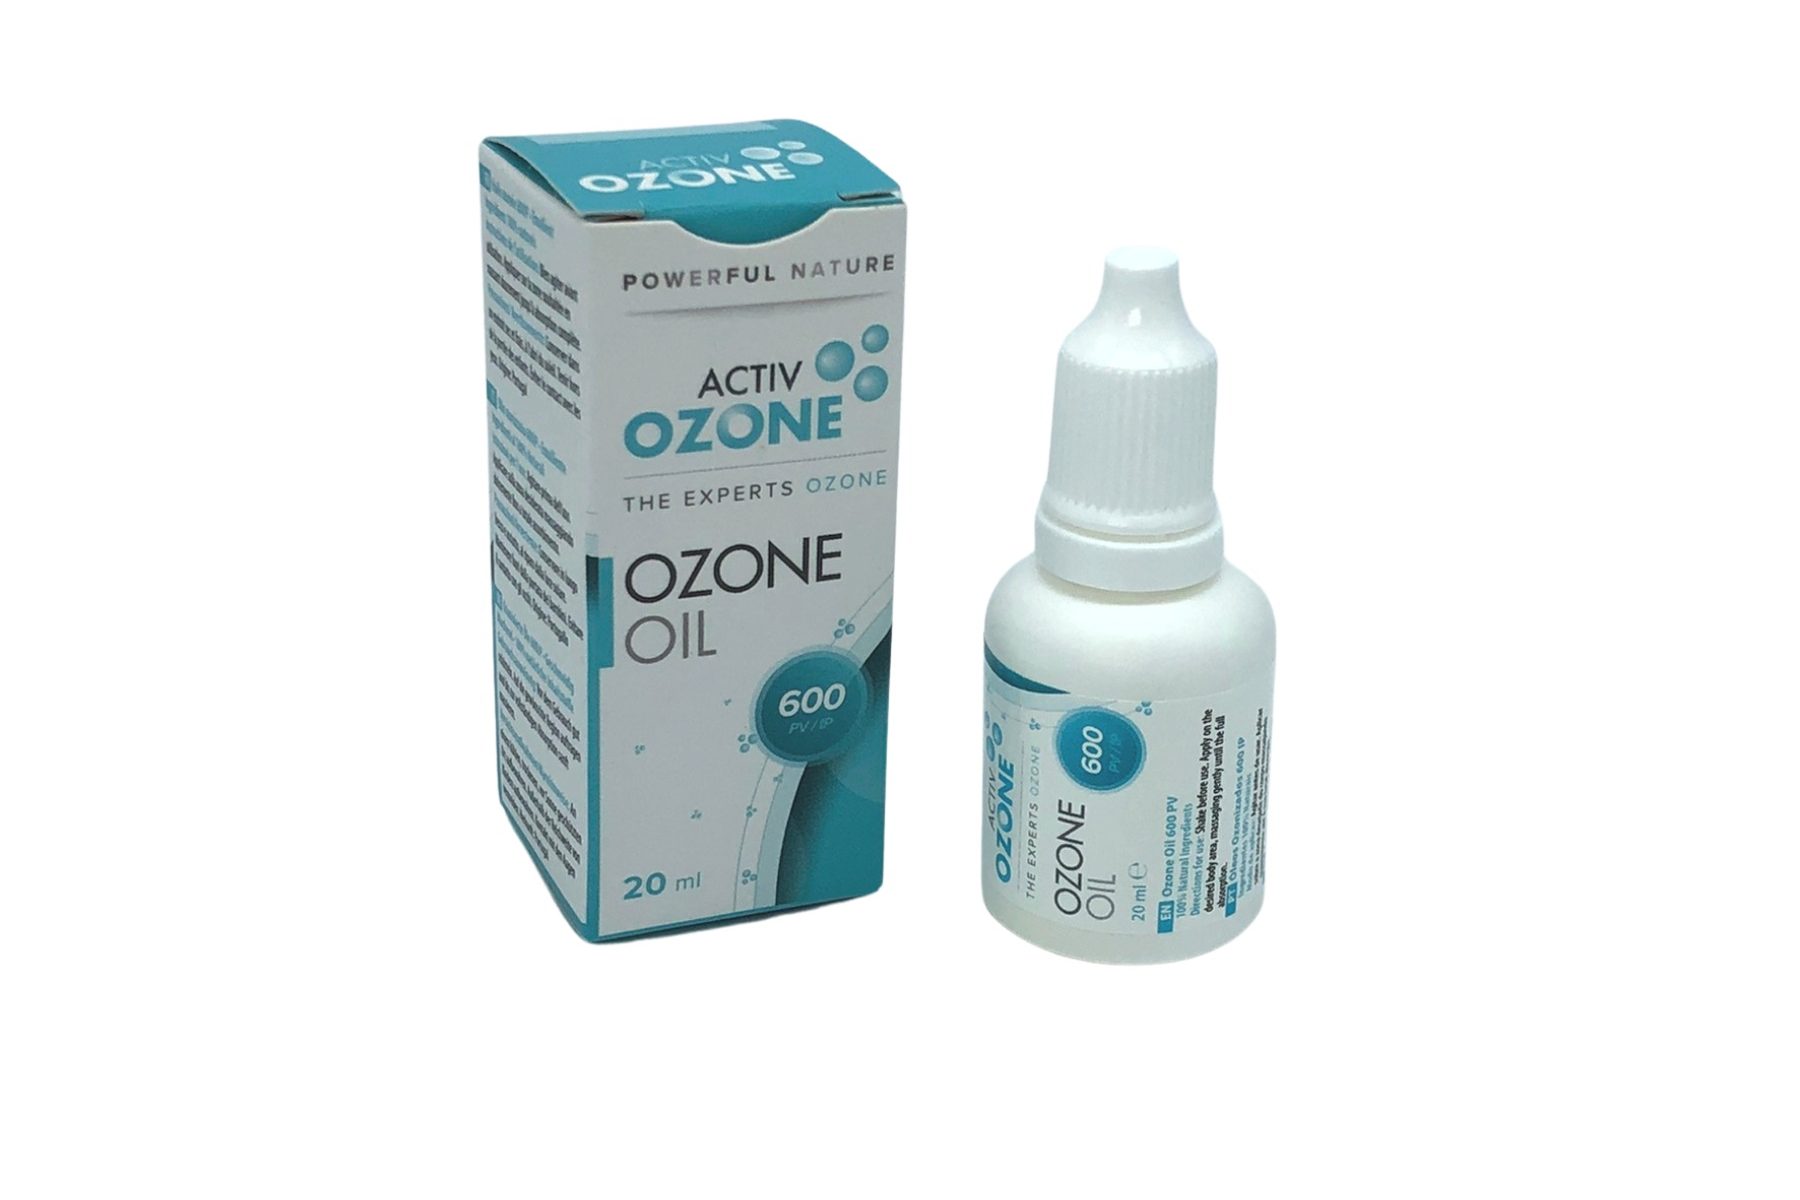 Huile ozonée d'olive et de tournesol pour les soins de la peau